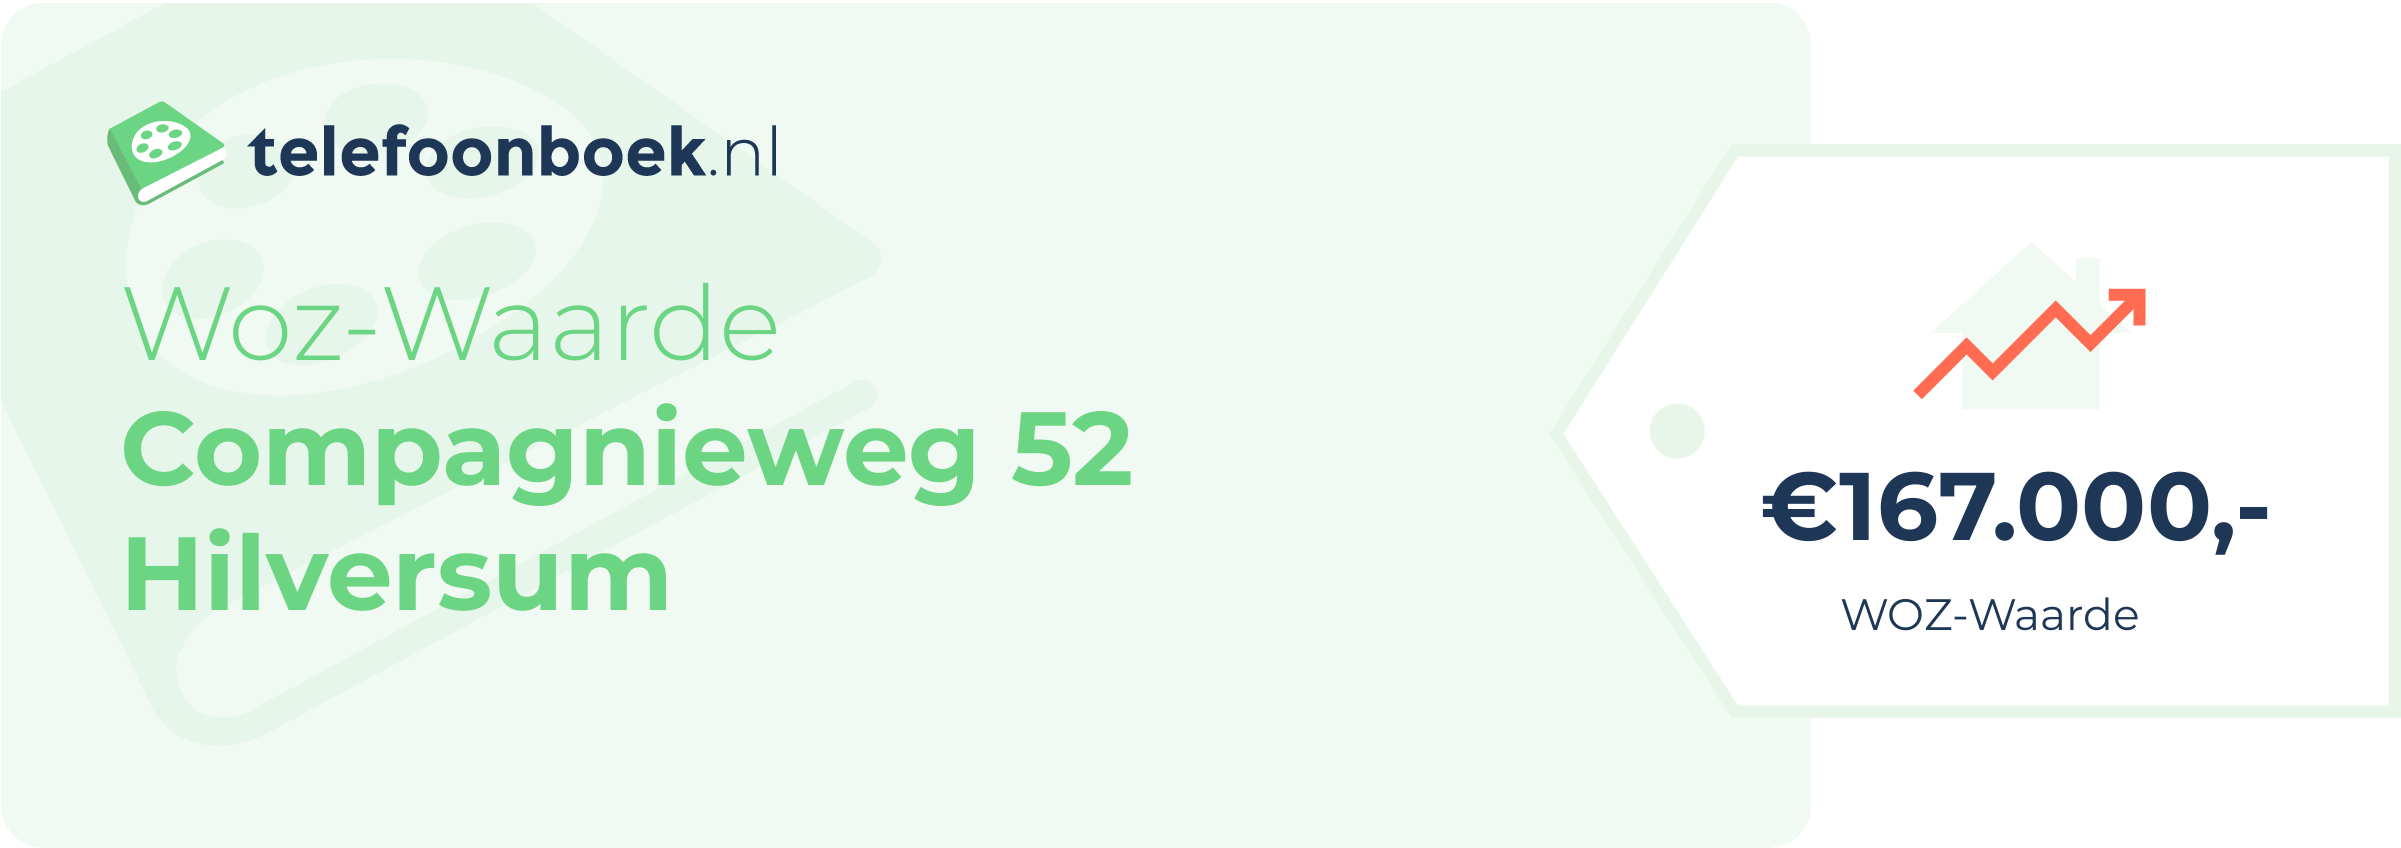 WOZ-waarde Compagnieweg 52 Hilversum